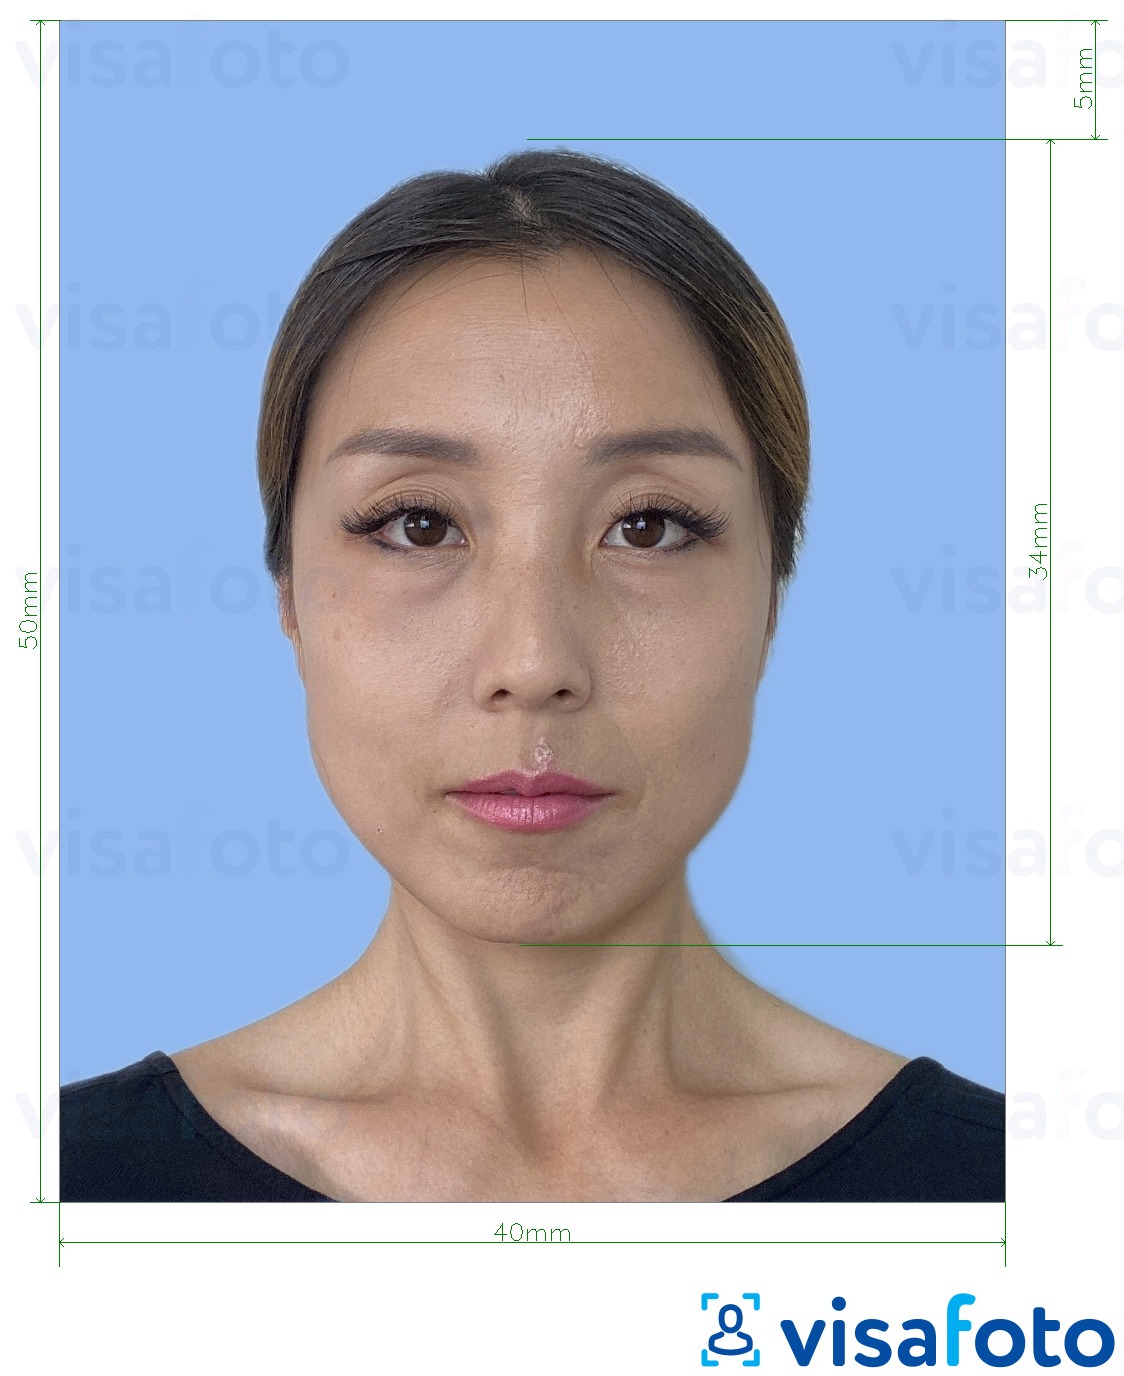 日本外国驾照4x5厘米 的标准尺寸照片示例